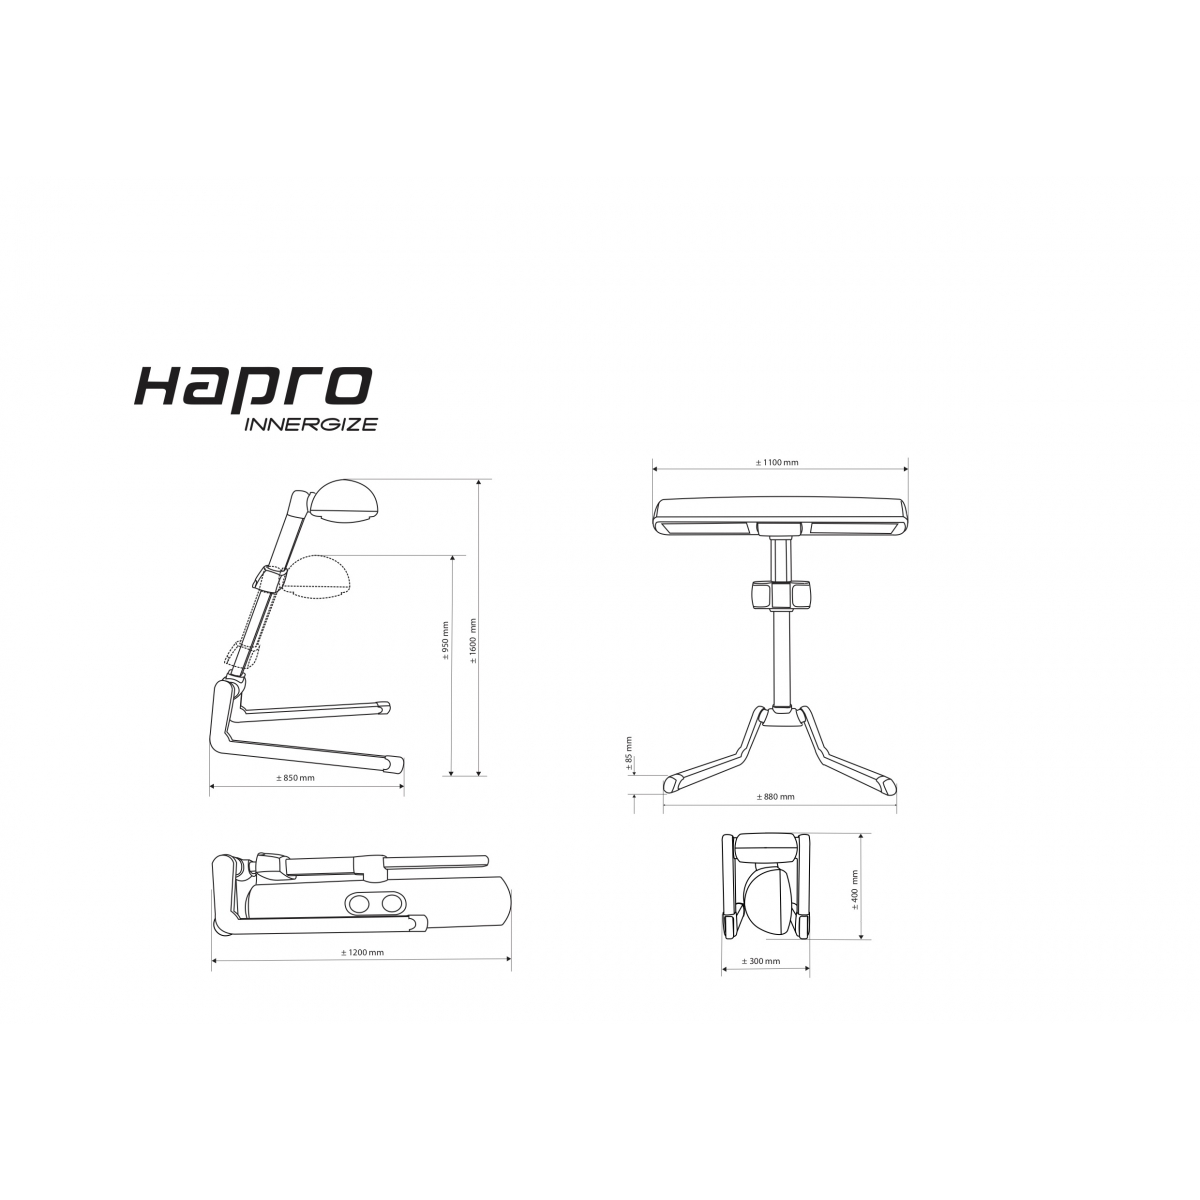 Hapro HP8580 Wellness Innergize Solarium compacto White - Soláriums domésticos - Hapro